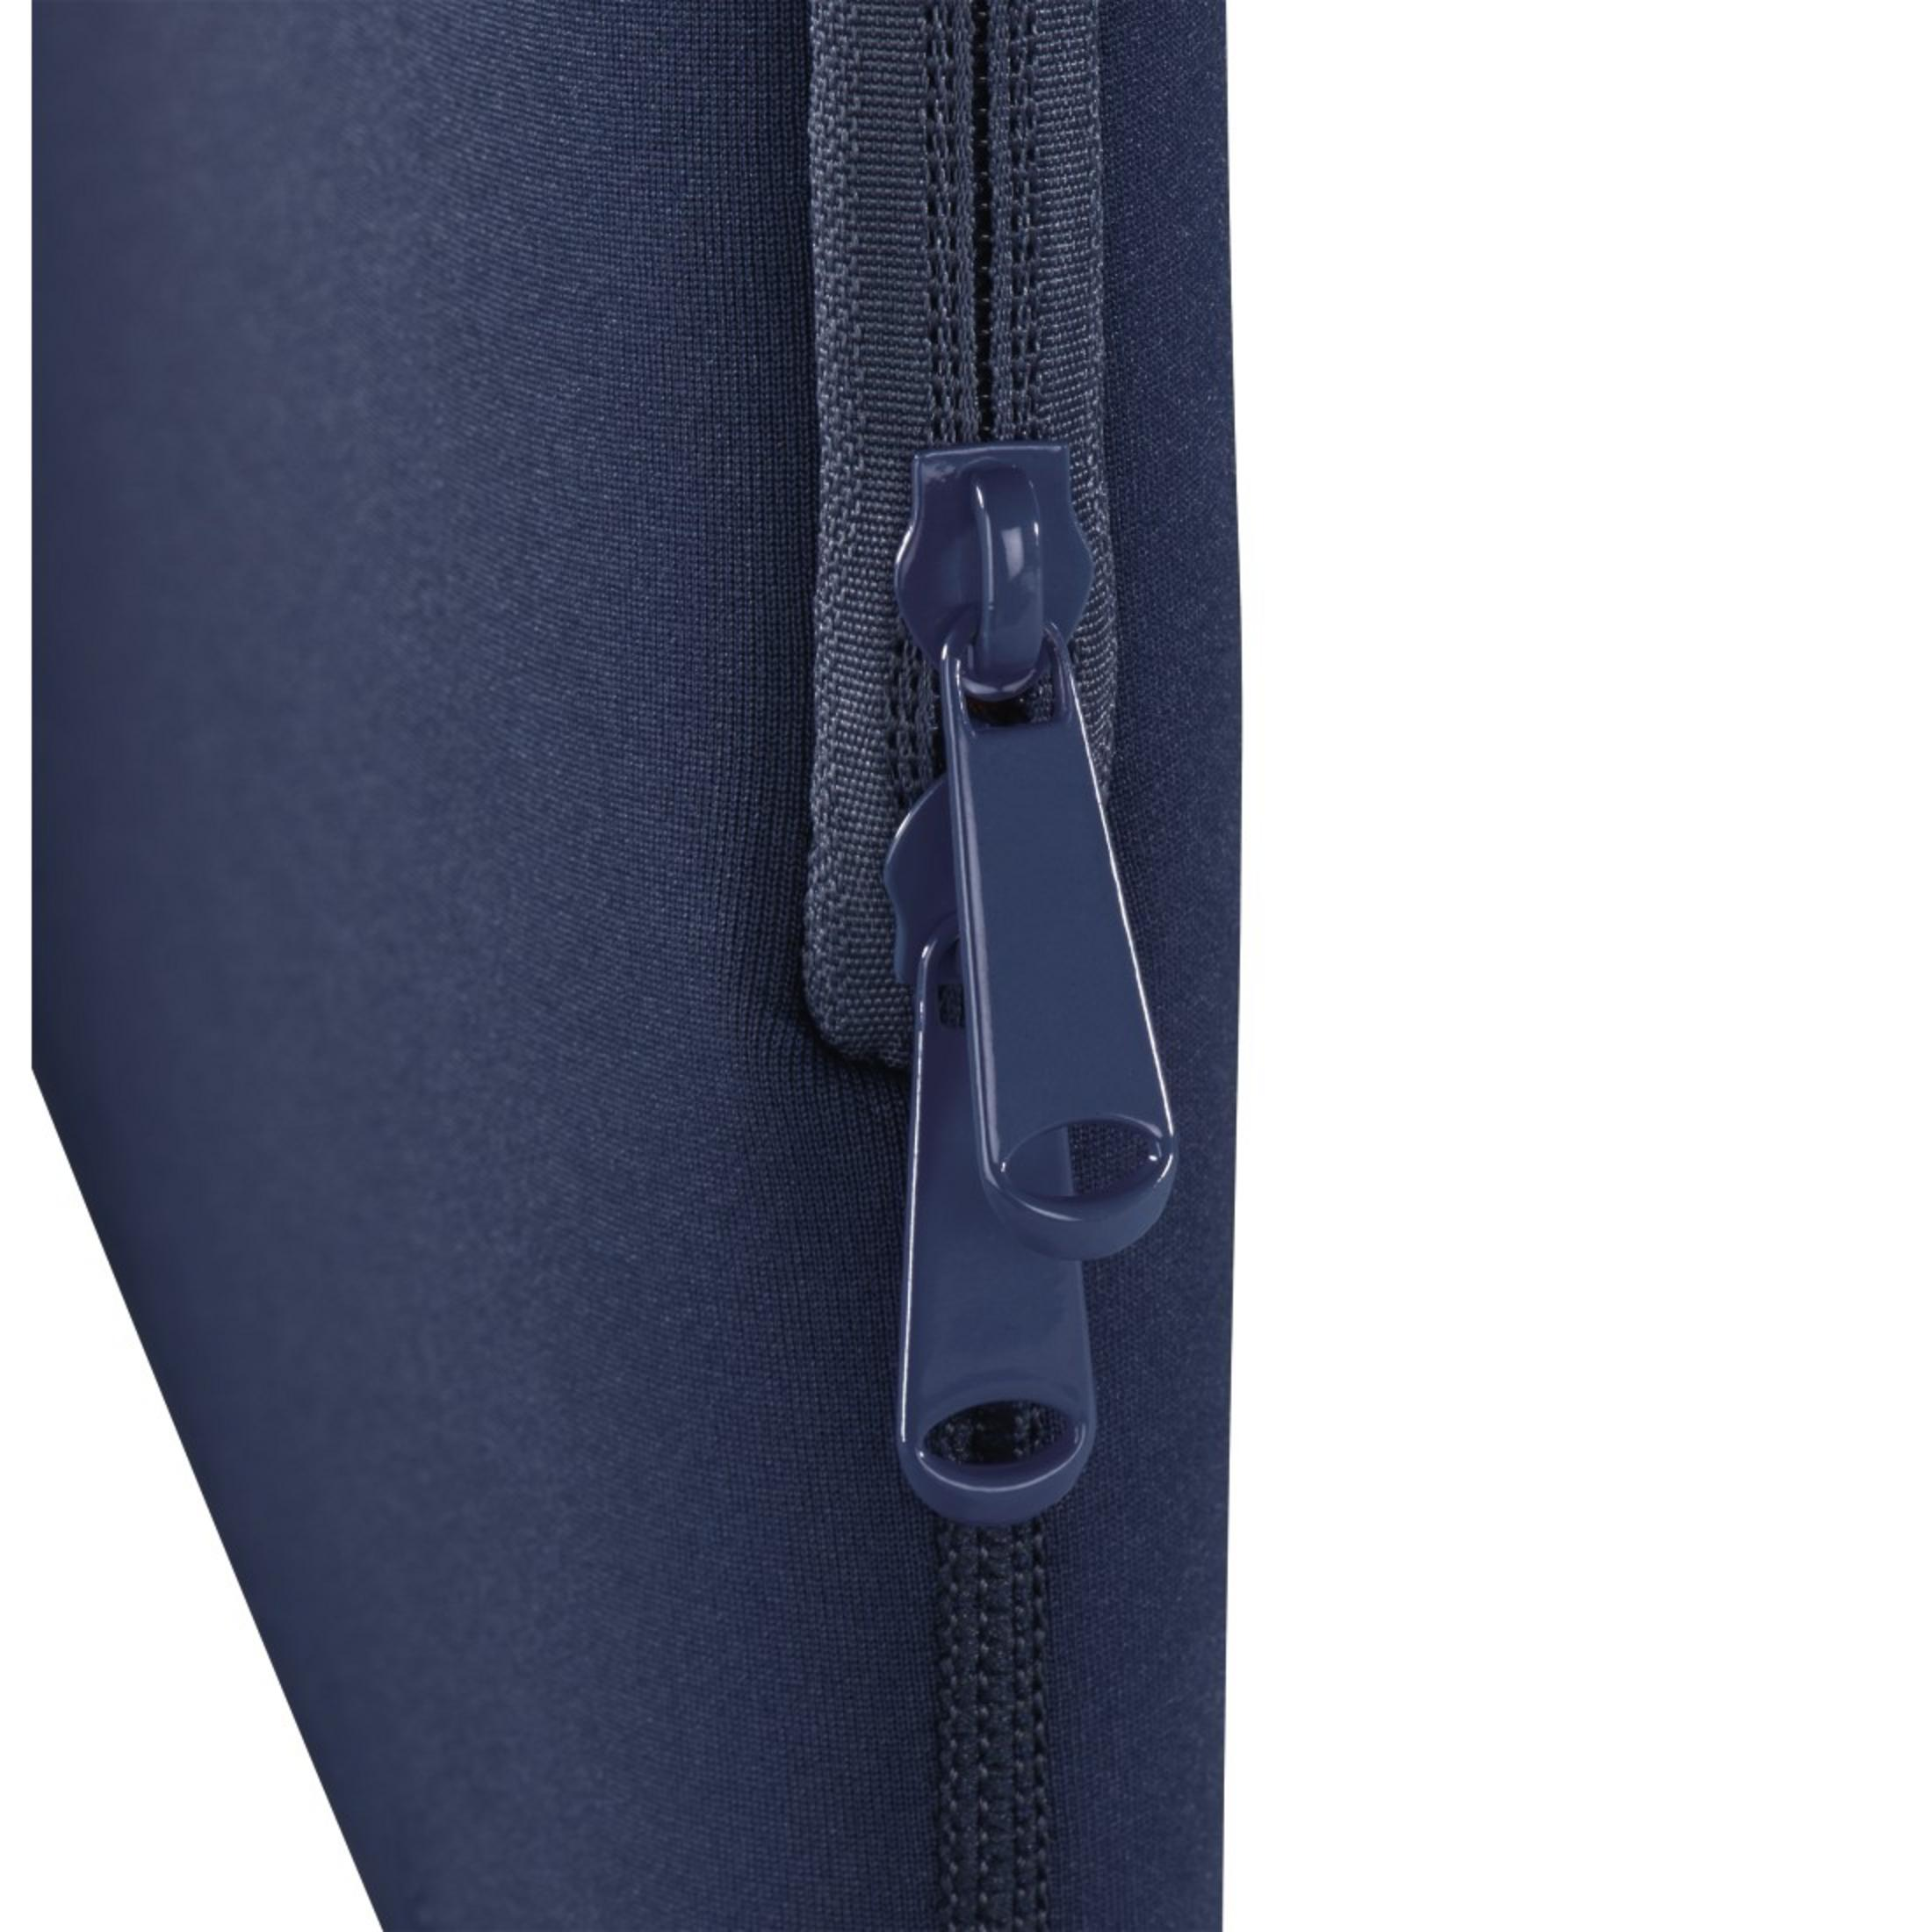 HAMA 101553 NB-SLE NEO Blau/Orange BL 13.3 Notebooktasche für Sleeve Universal Neopren